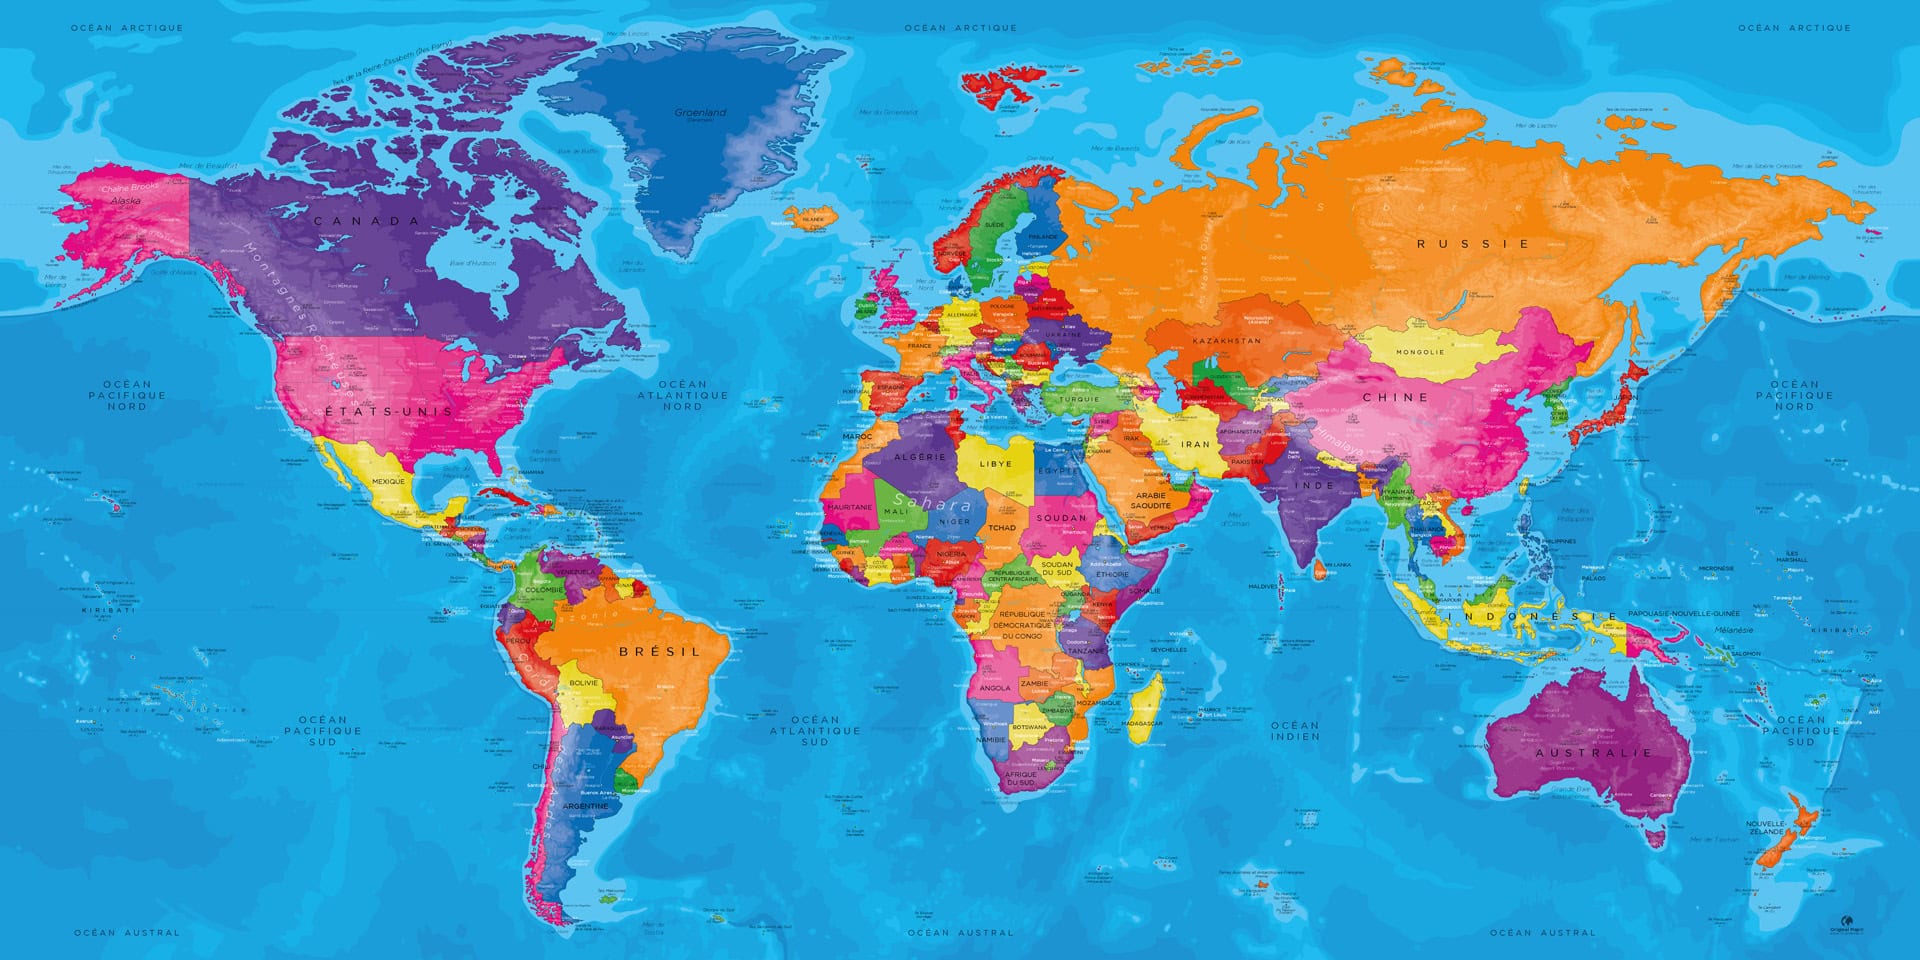 La mappemonde géante : Une carte du monde immense !